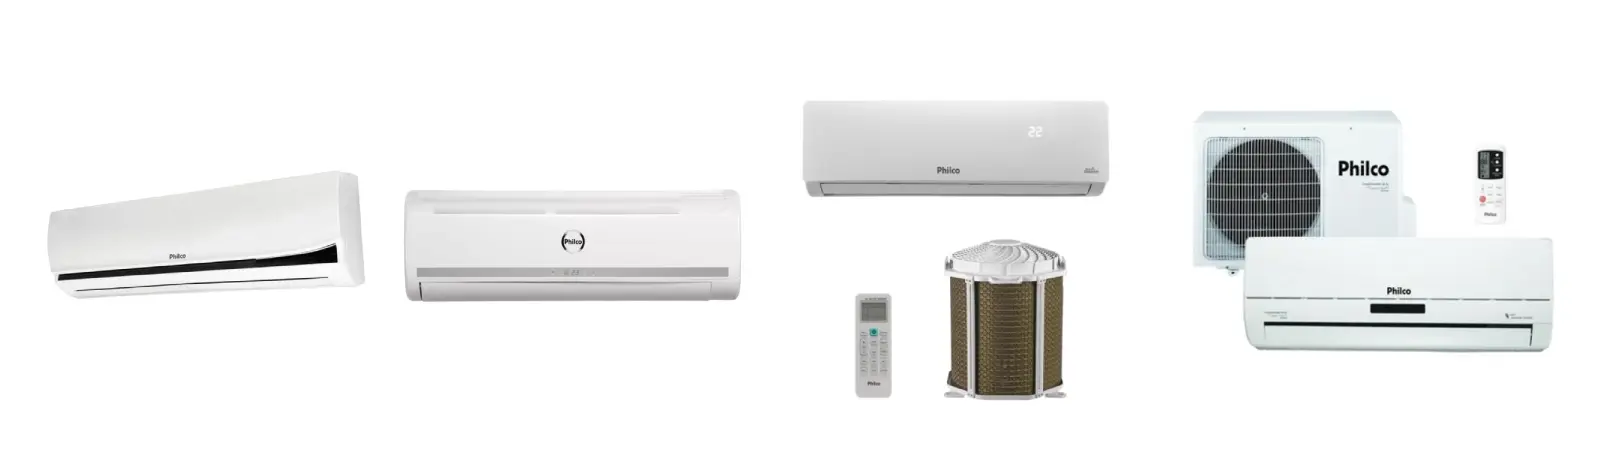 imagens dos modelos de ar-condicionado Philco FM, FM2, FM4 e Inverter